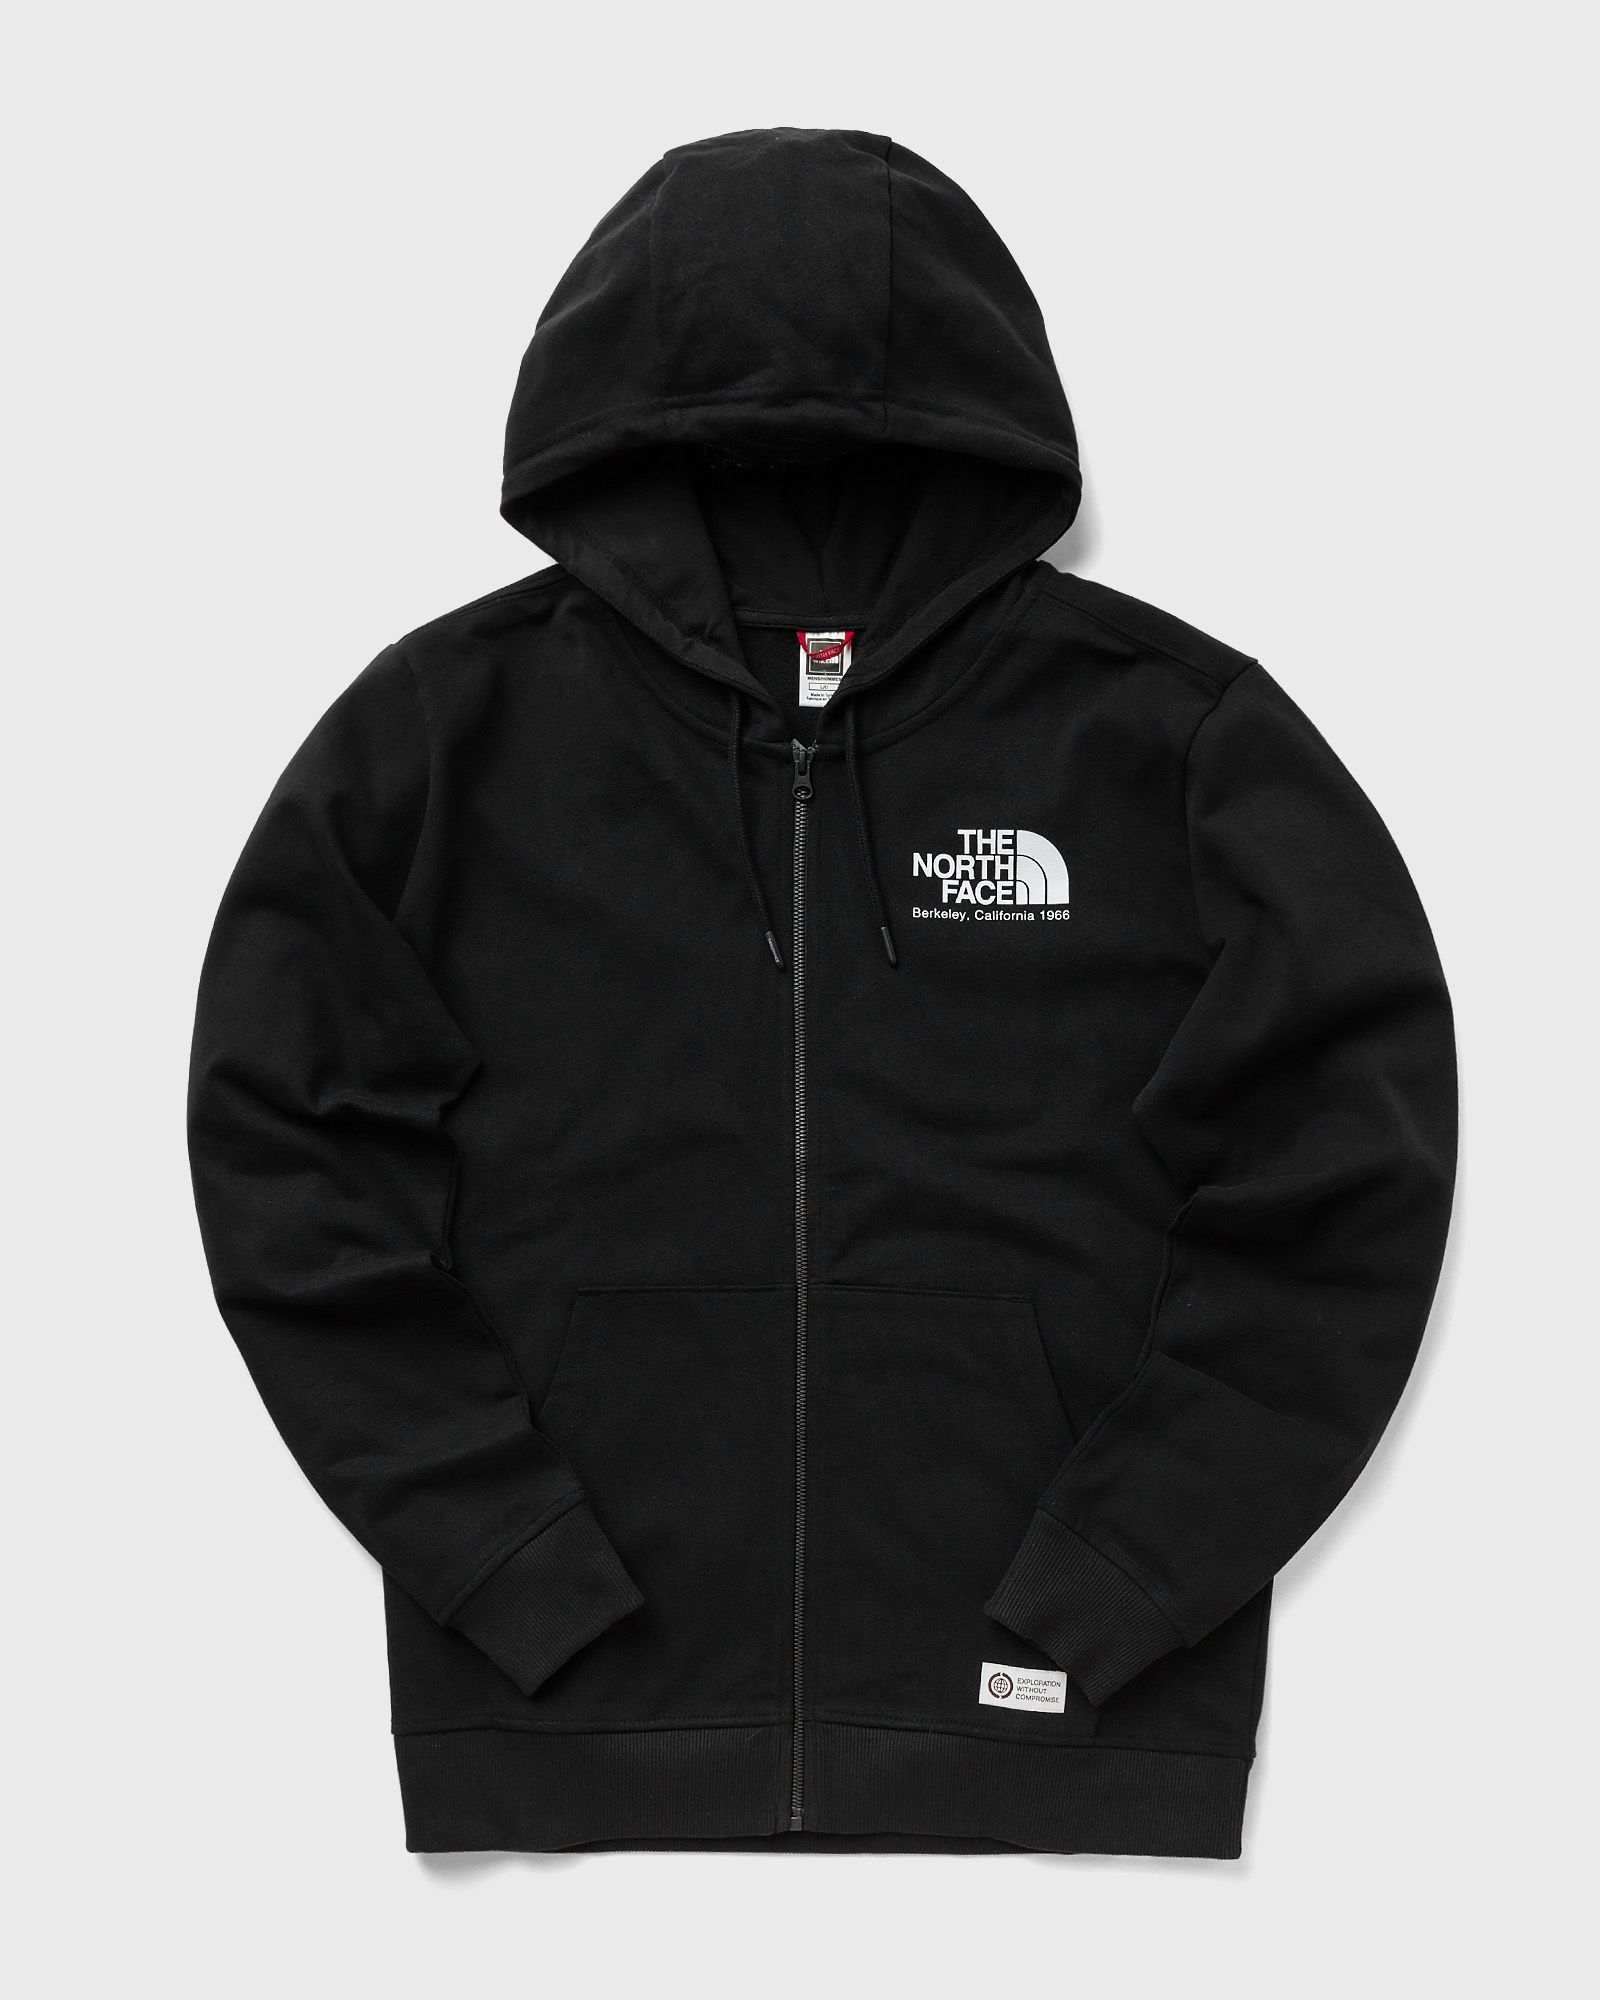 The North Face - berkeley california fullzip hoodie men hoodies|zippers black in größe:l